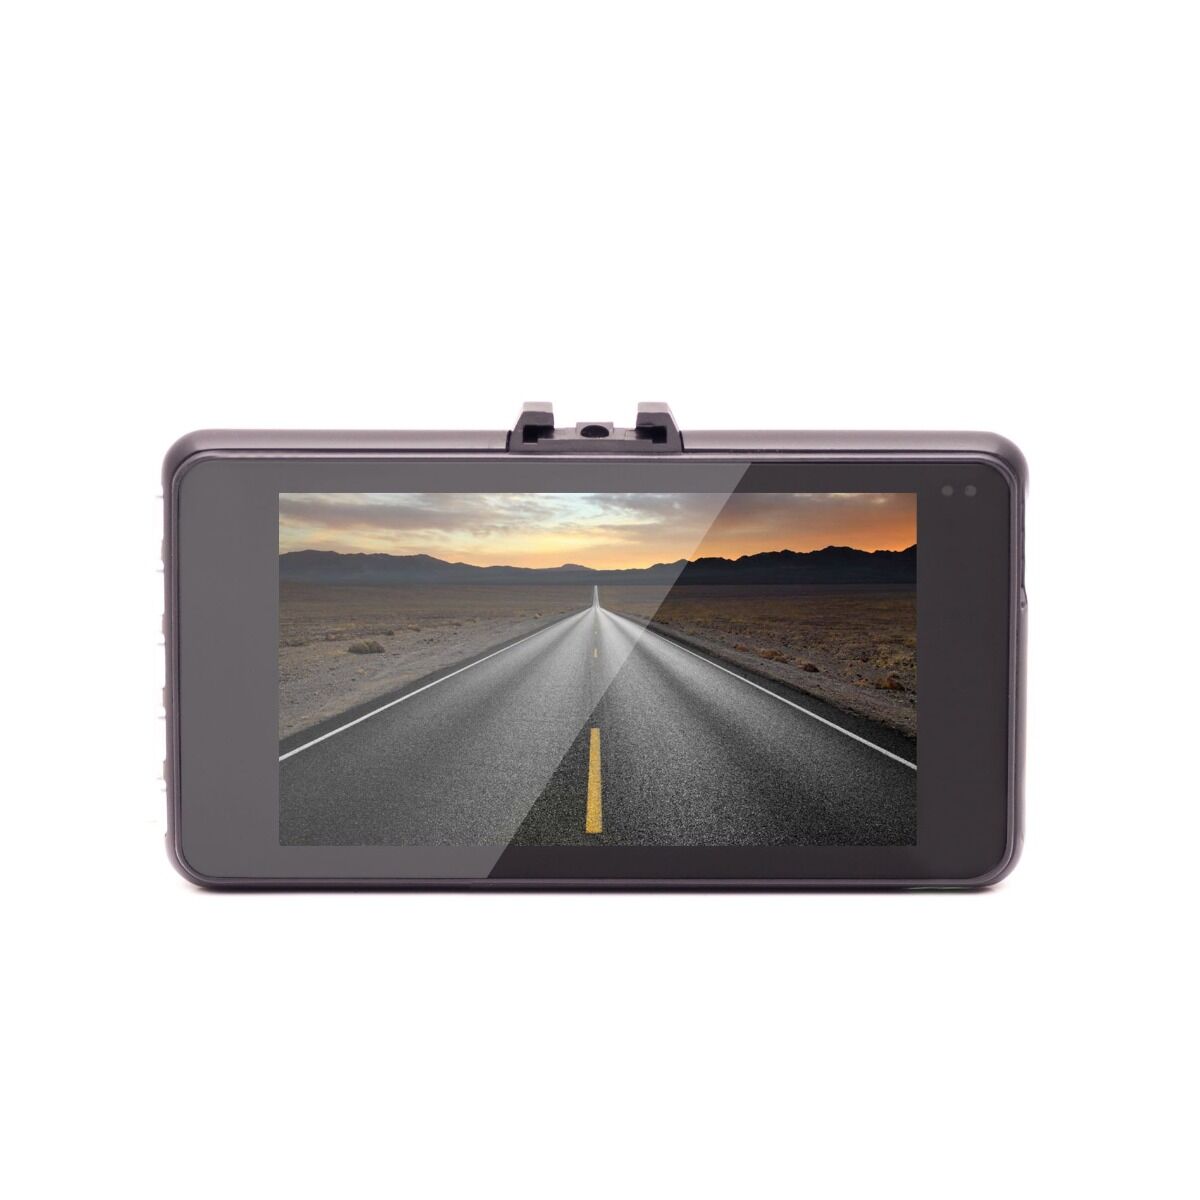 Camera auto DVR 3001 E-Boda, Full HD, ecran 3